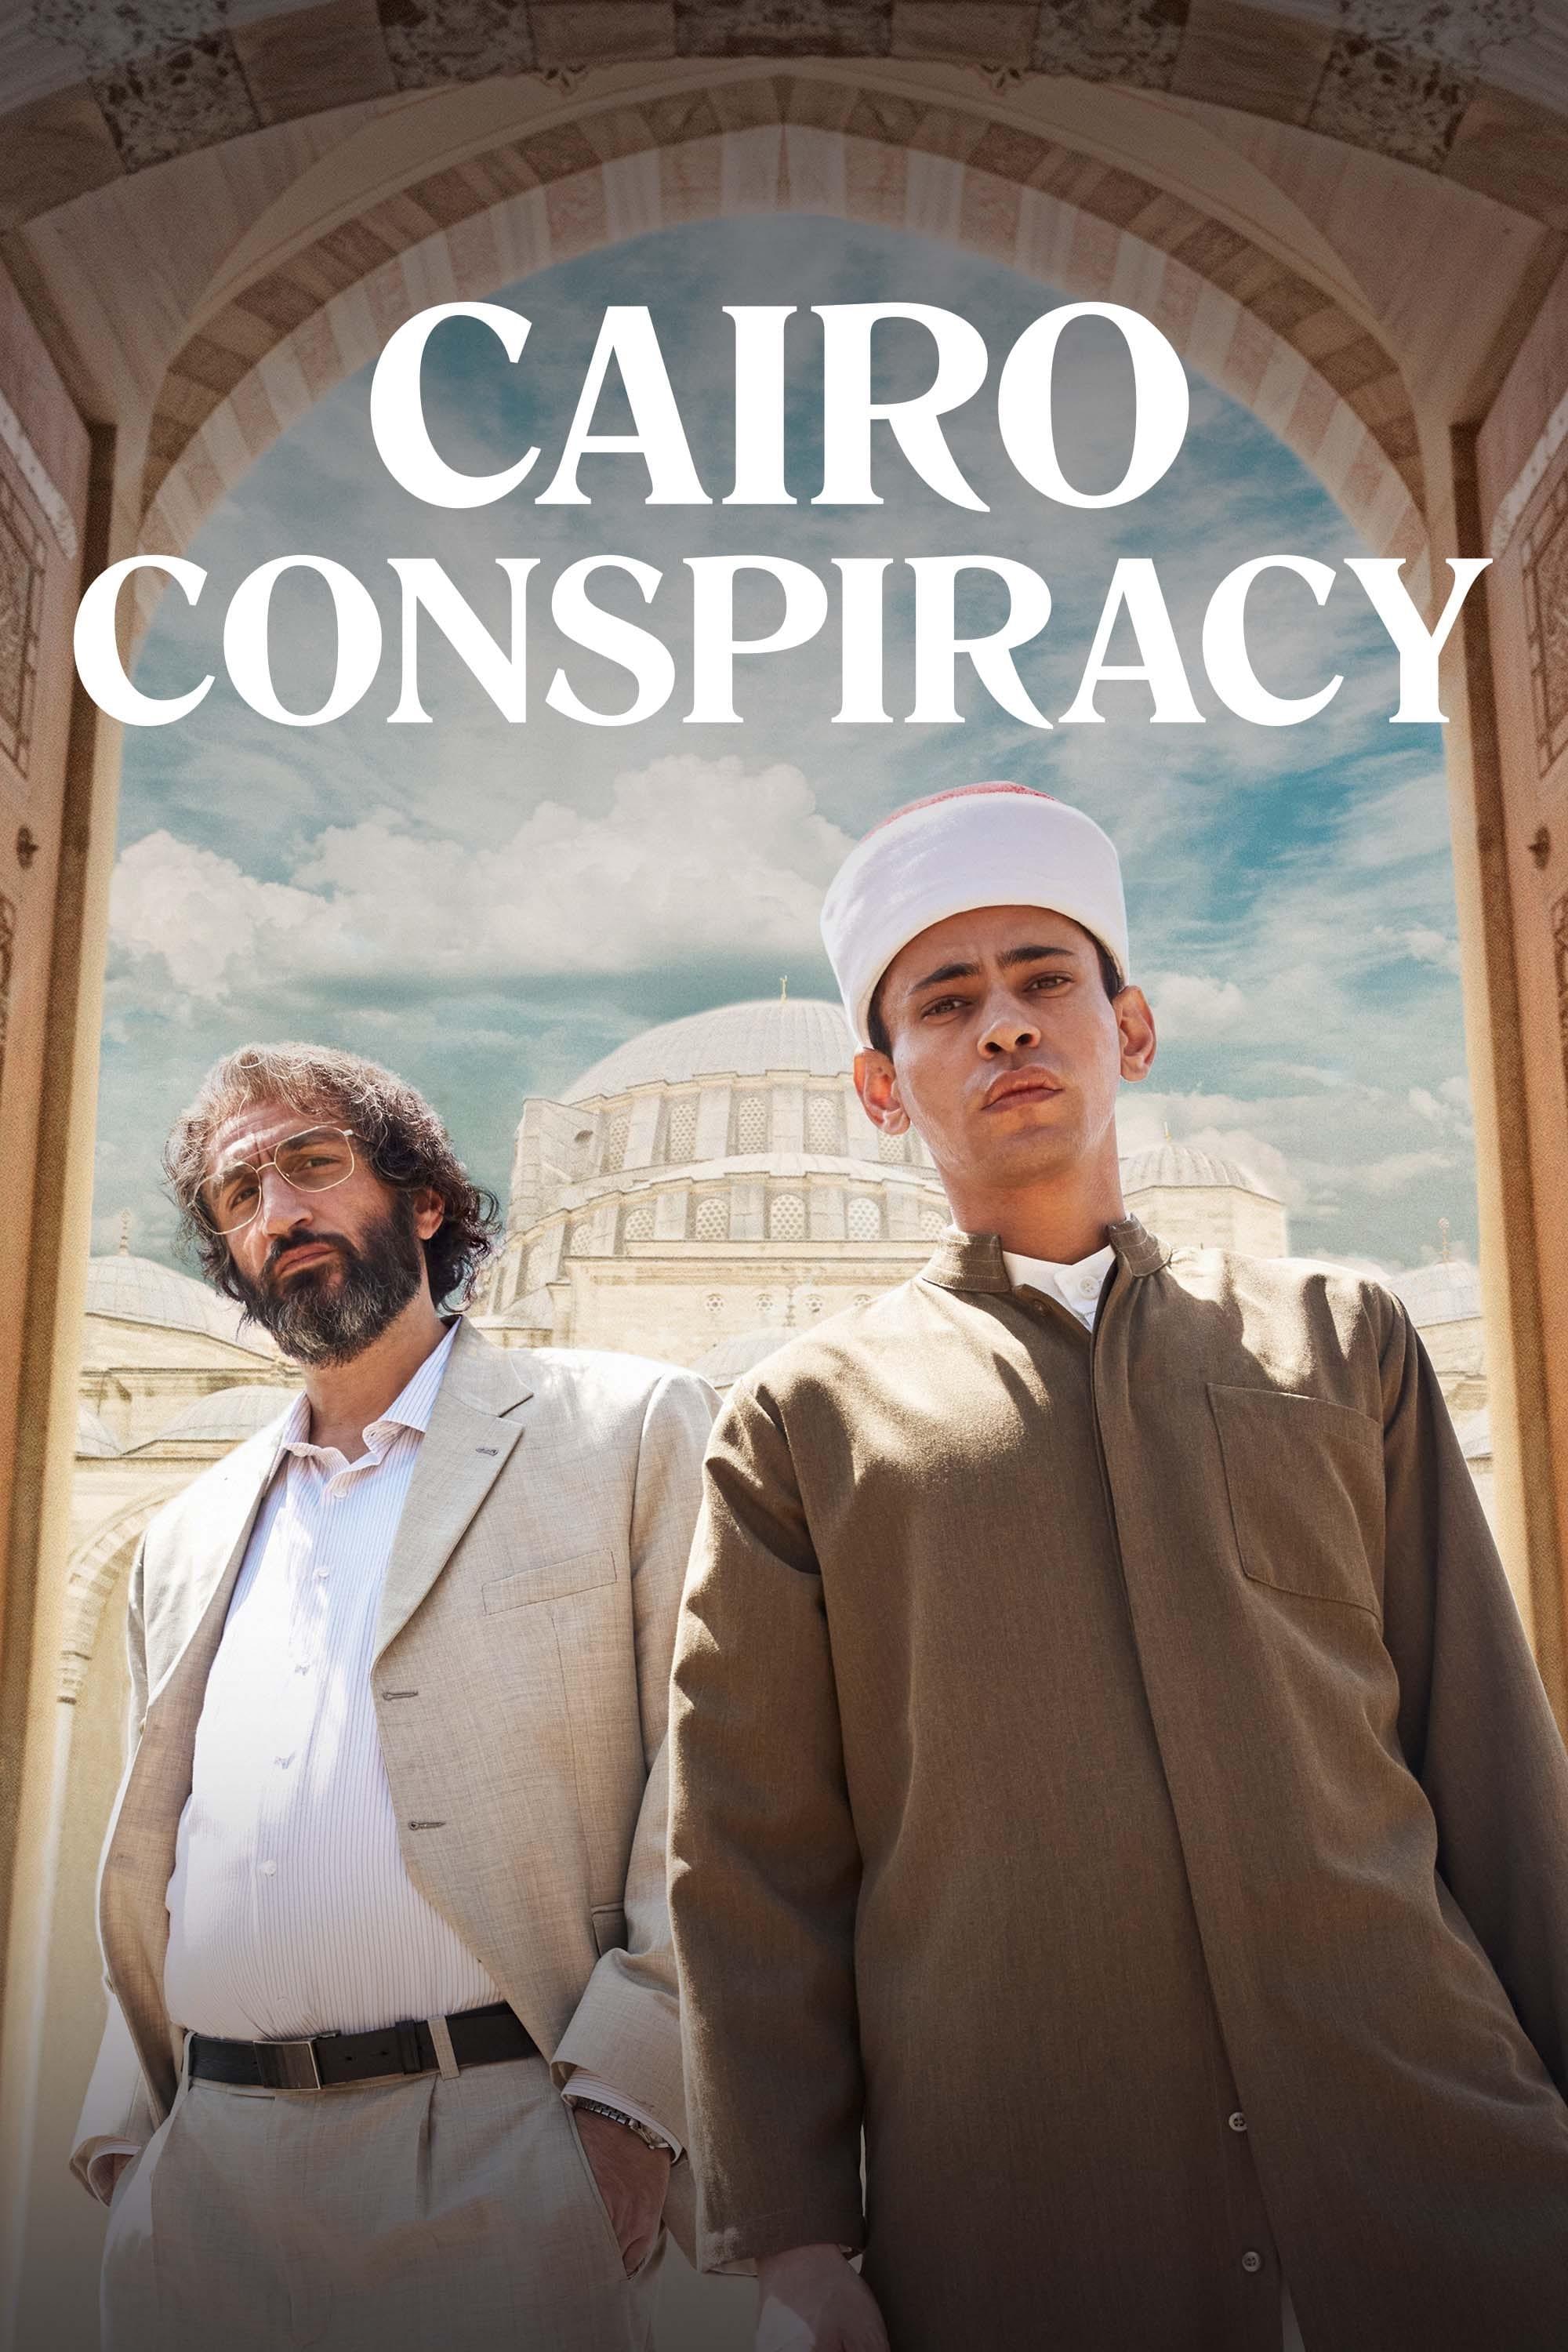 Cairo Conspiracy poster